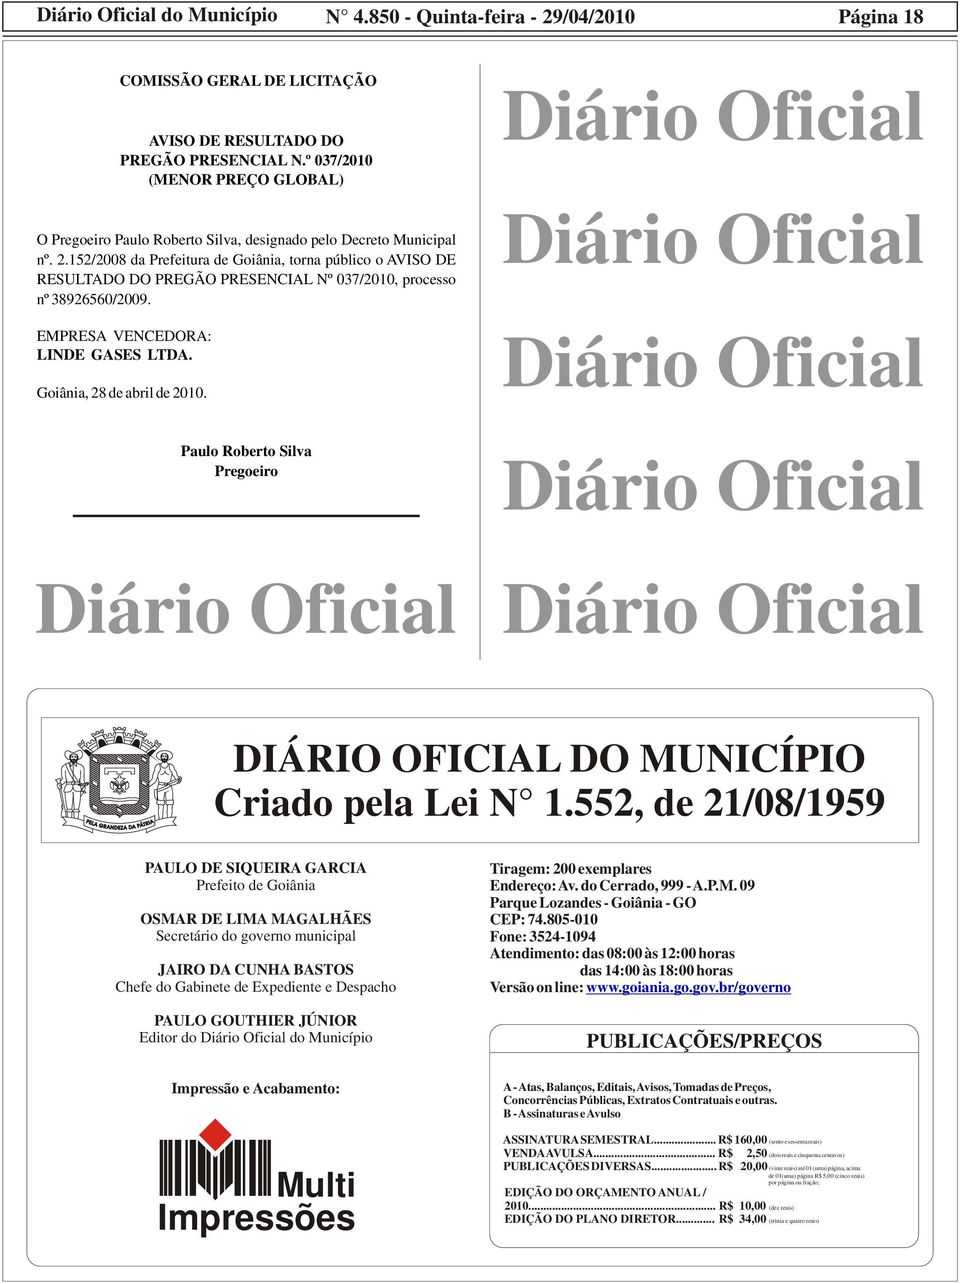 152/2008 da Prefeitura de Goiânia, torna público o AVISO DE RESULTADO DO PREGÃO PRESENCIAL Nº 037/2010, processo nº 38926560/2009. EMPRESA VENCEDORA: LINDE GASES LTDA. Goiânia, 28 de abril de 2010.